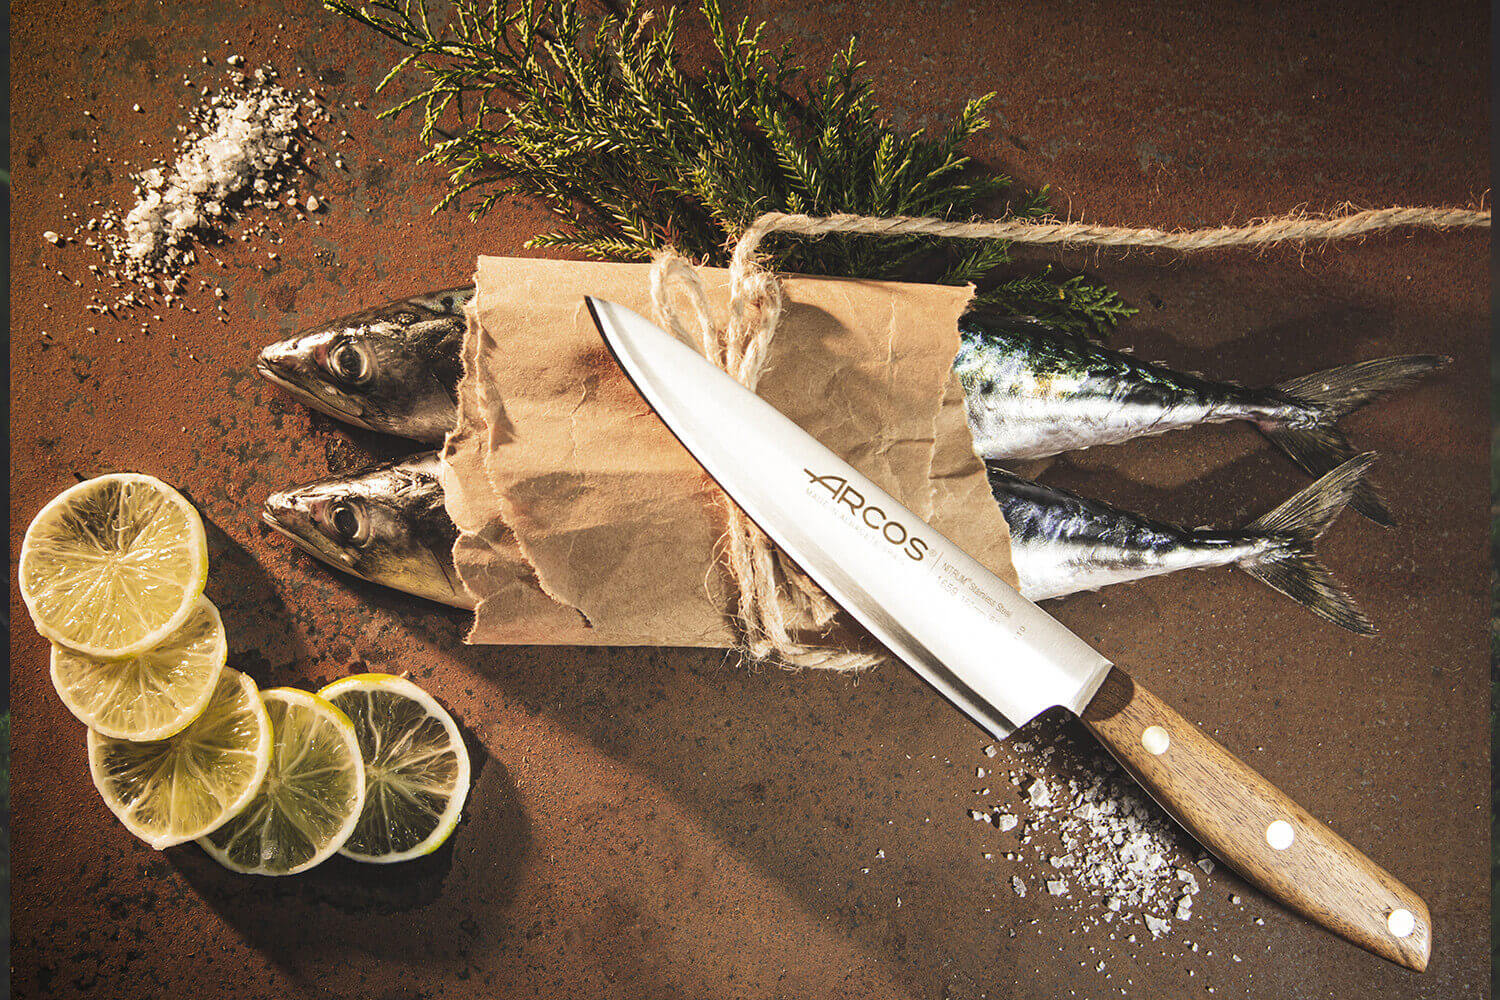 Ensemble couteau et fourchette Arcos pour barbecue de la série Nórdika